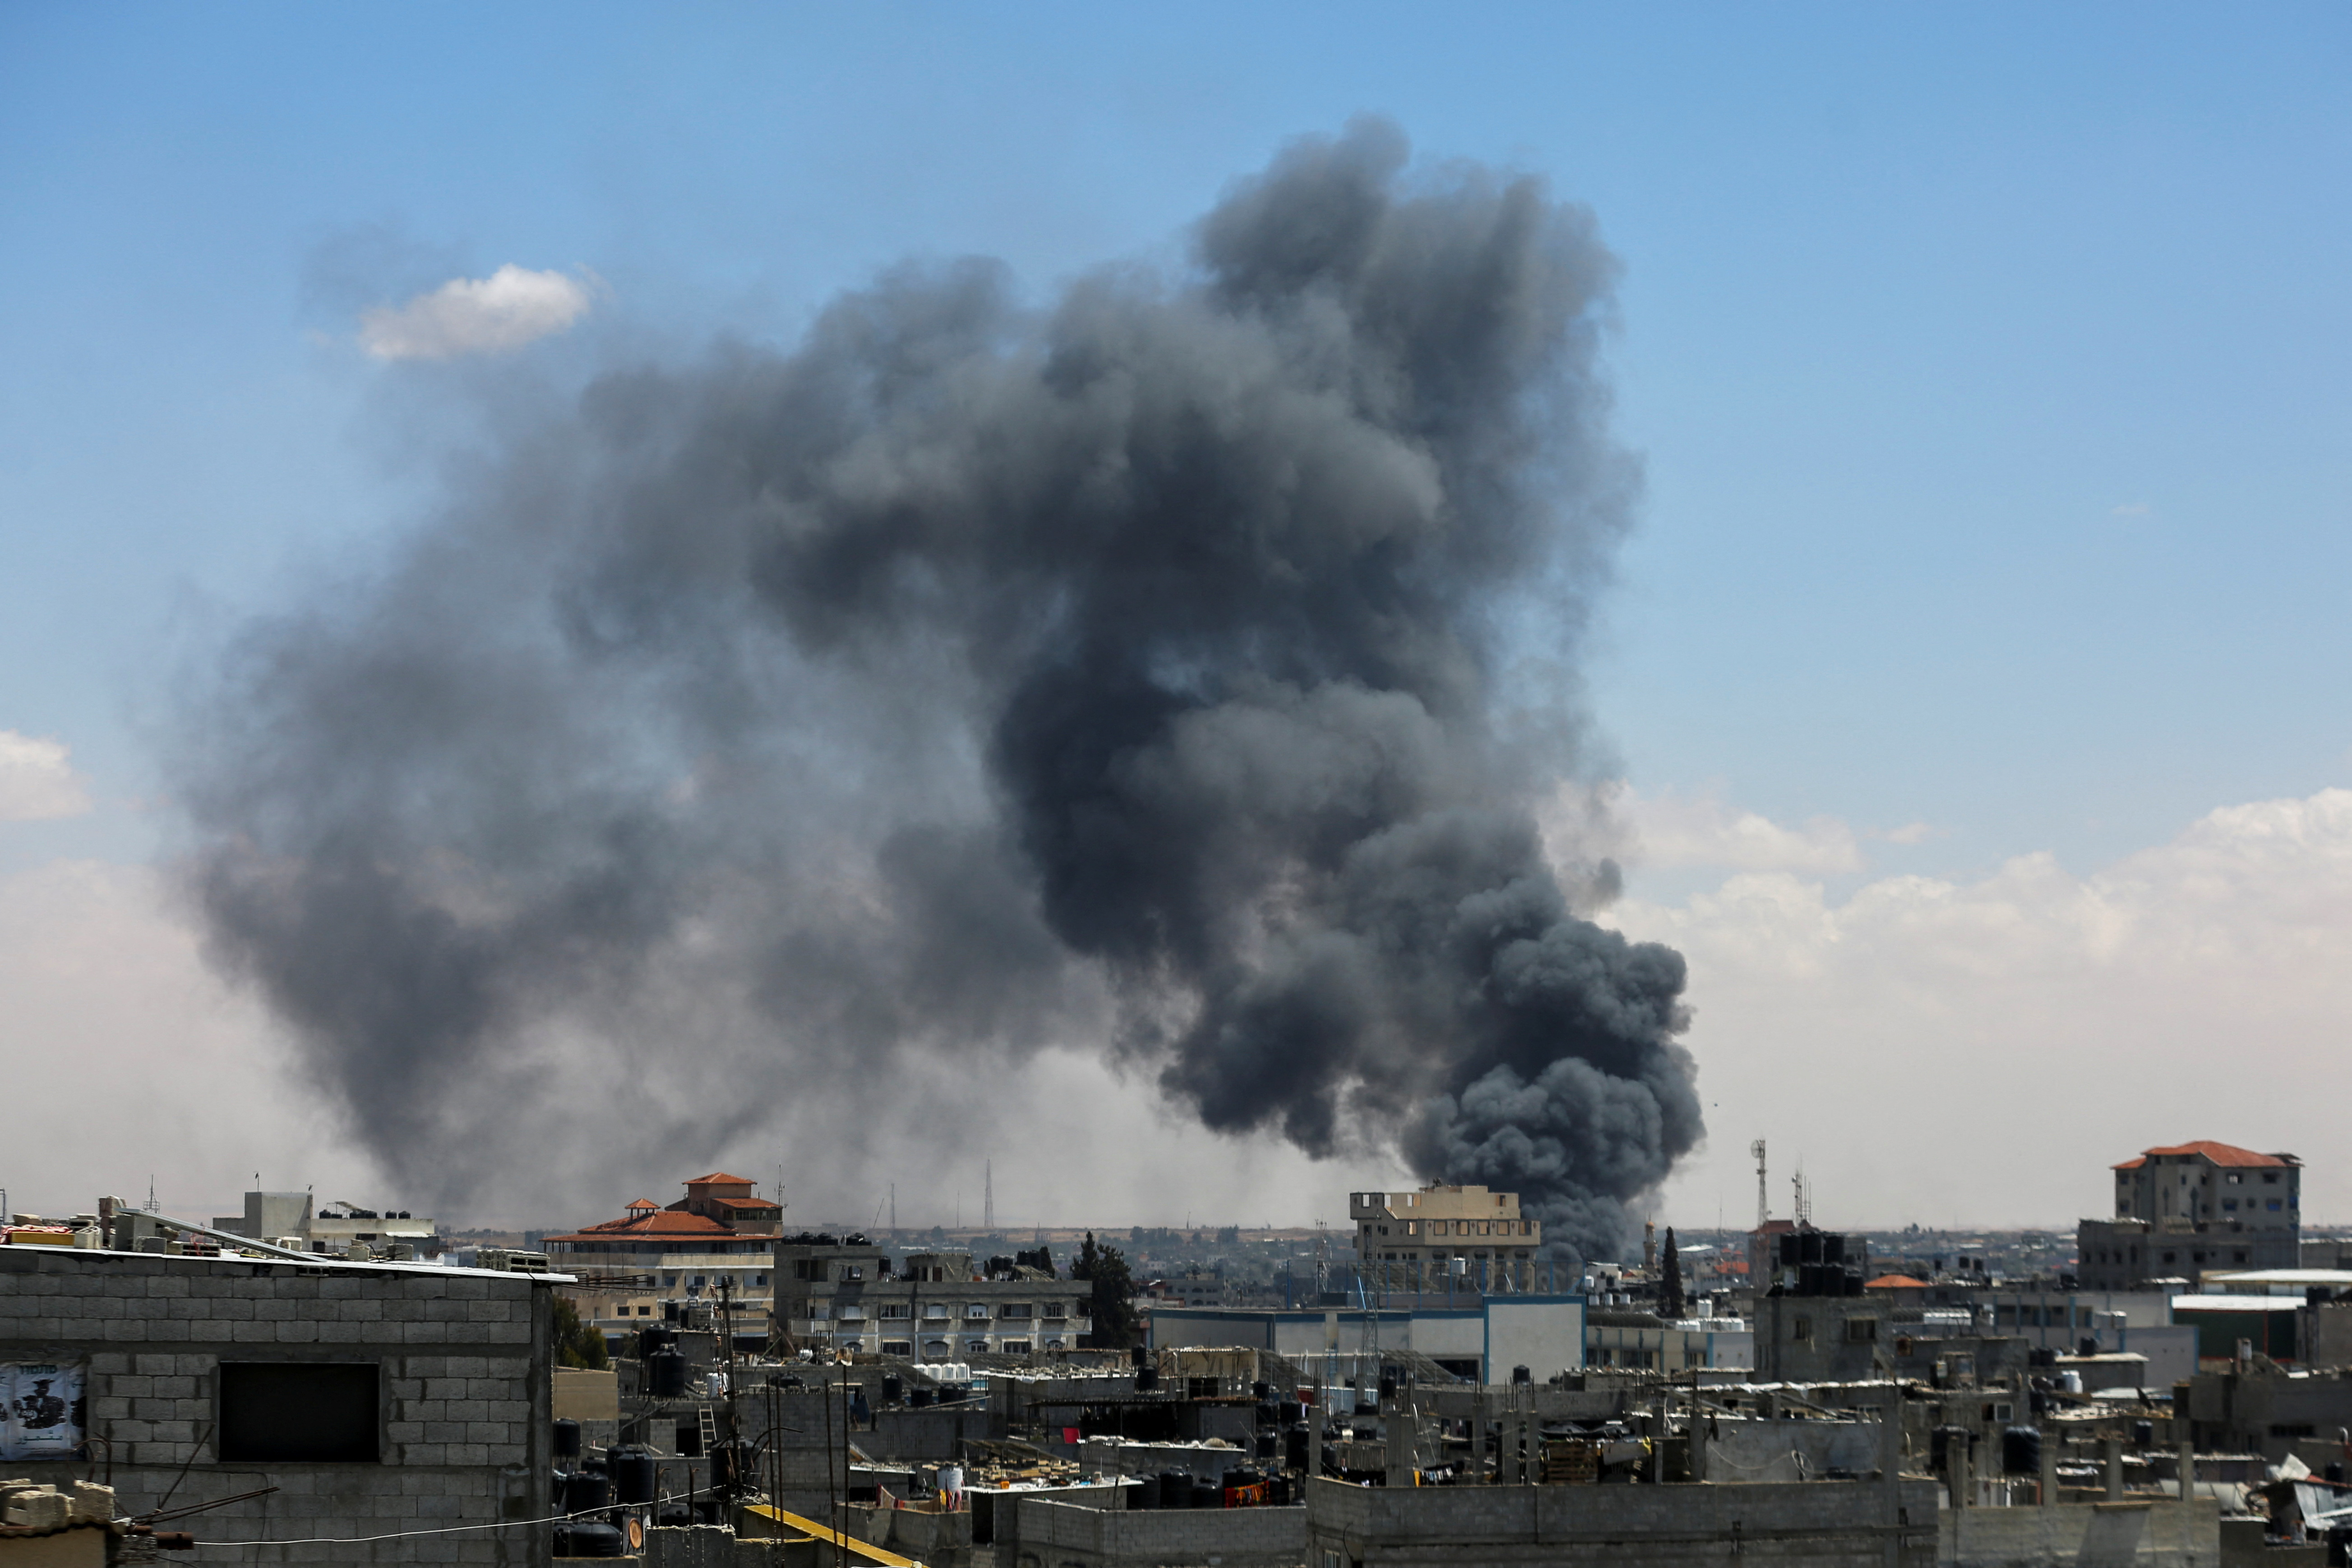 ガザ休戦交渉再開、ハマスが修正案 米「相違埋められる」 - ロイター (Reuters Japan)